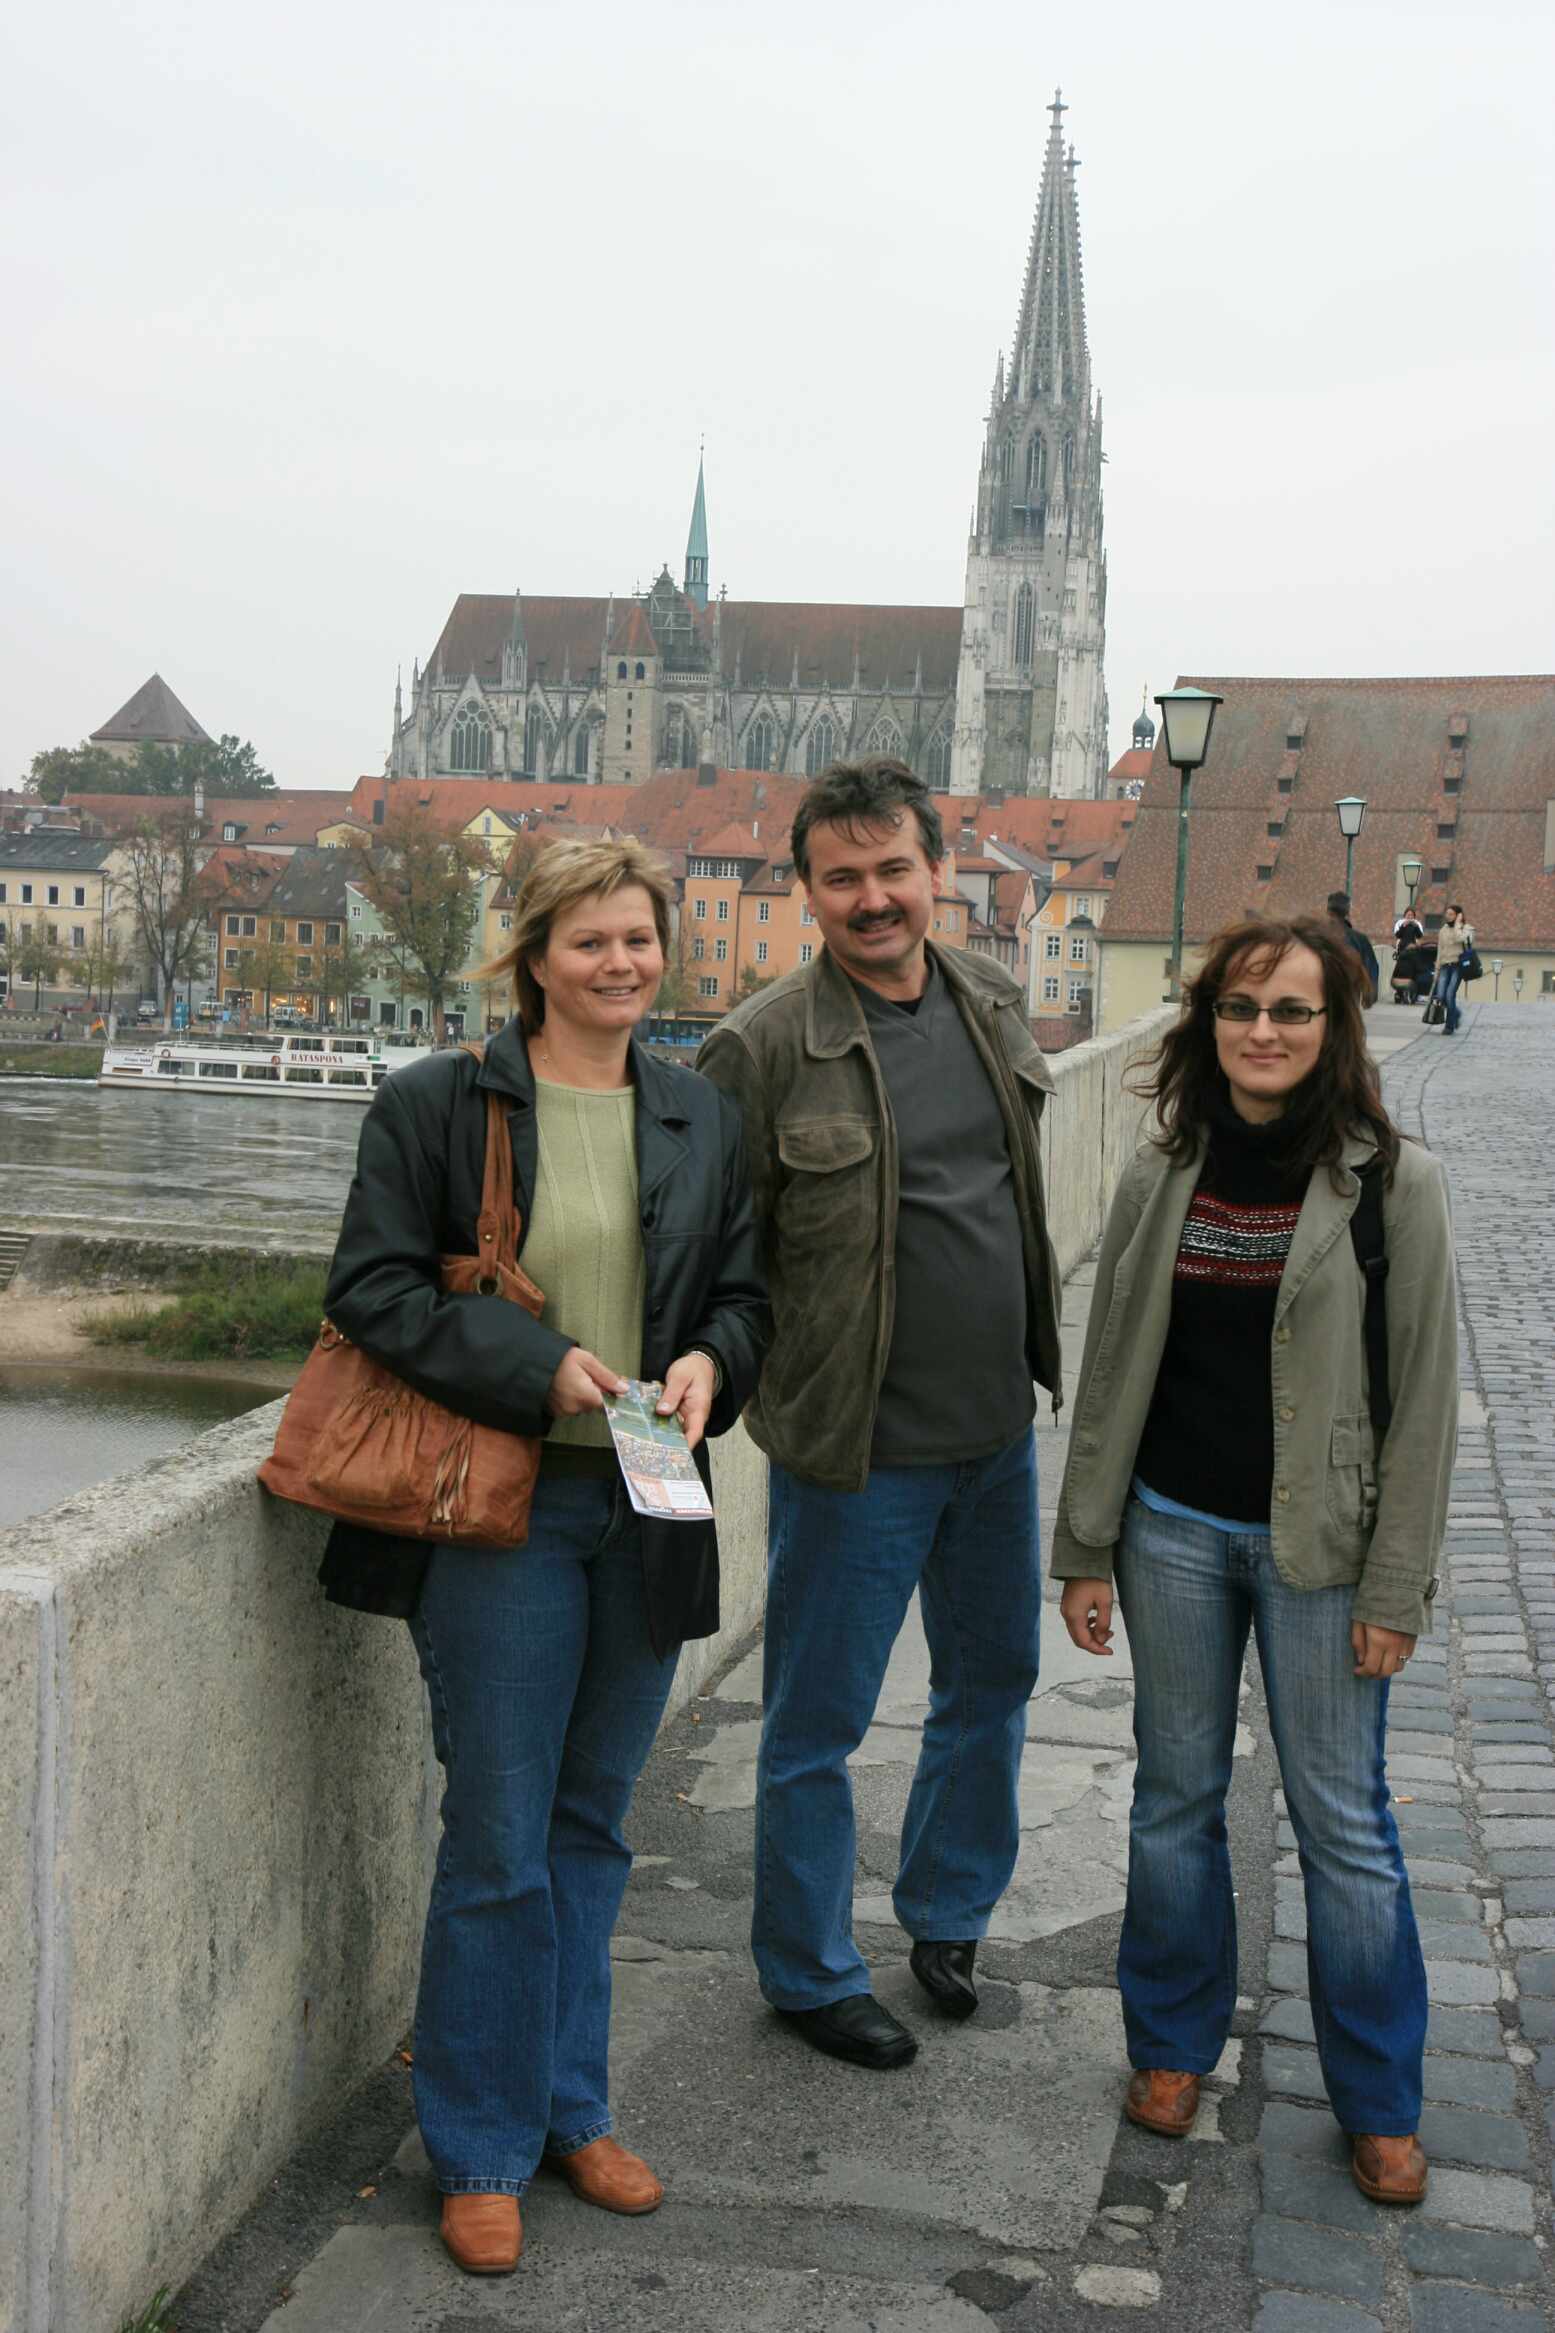 Regensburg stone-bridge across the Danube: Olga Rotreklová, Petr Bureš, Ivana Hralová